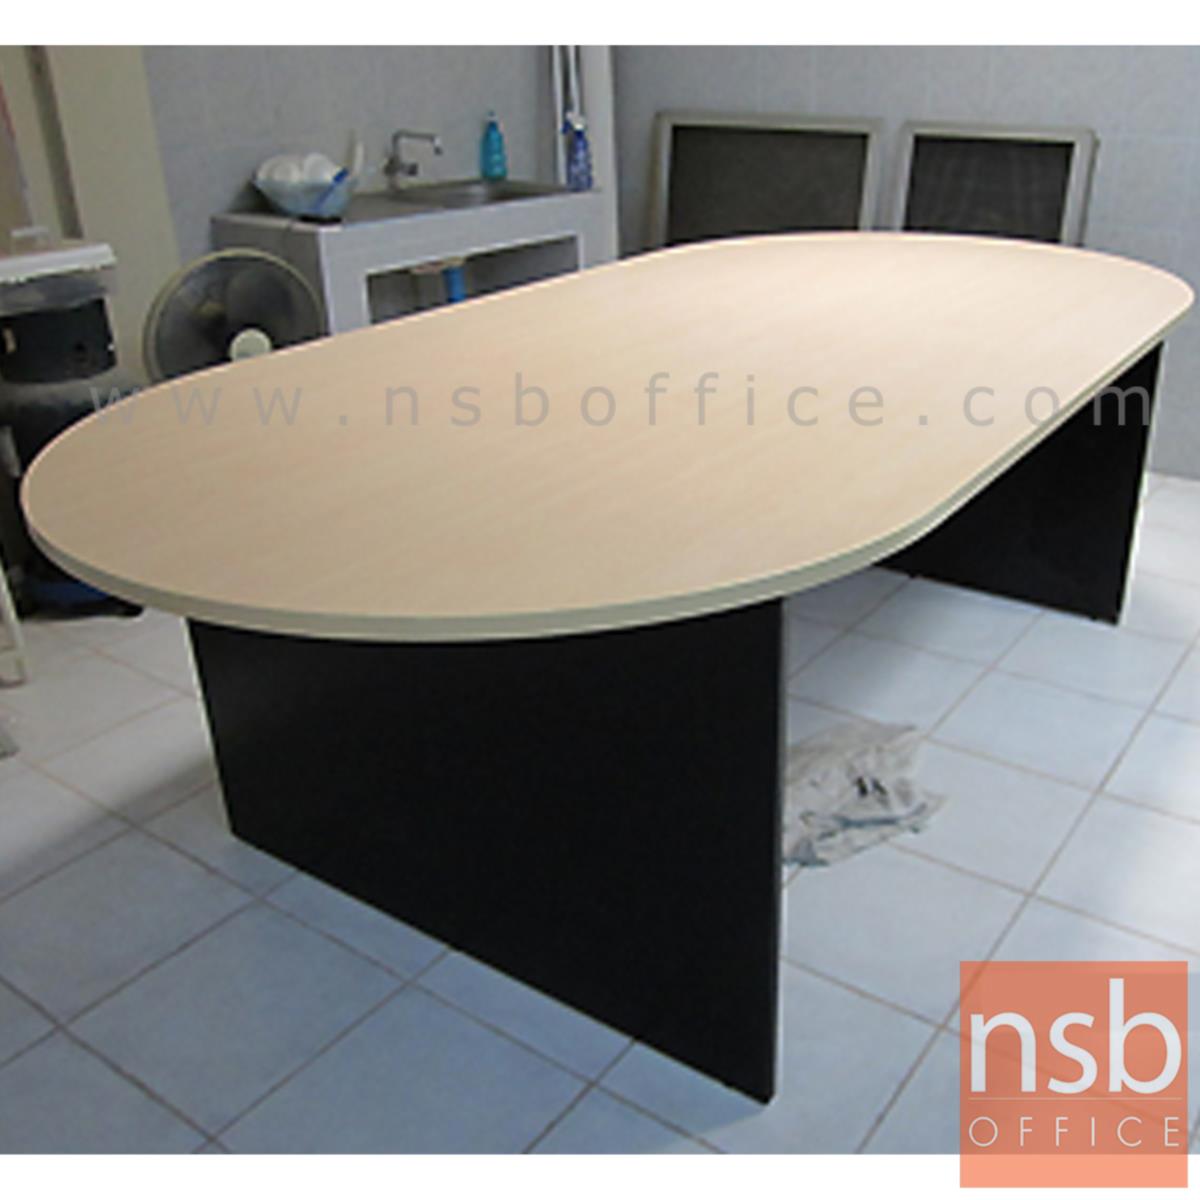 โต๊ะประชุมหัวโค้ง  ขนาด 180W, 200W, 240W cm.  ขาไม้